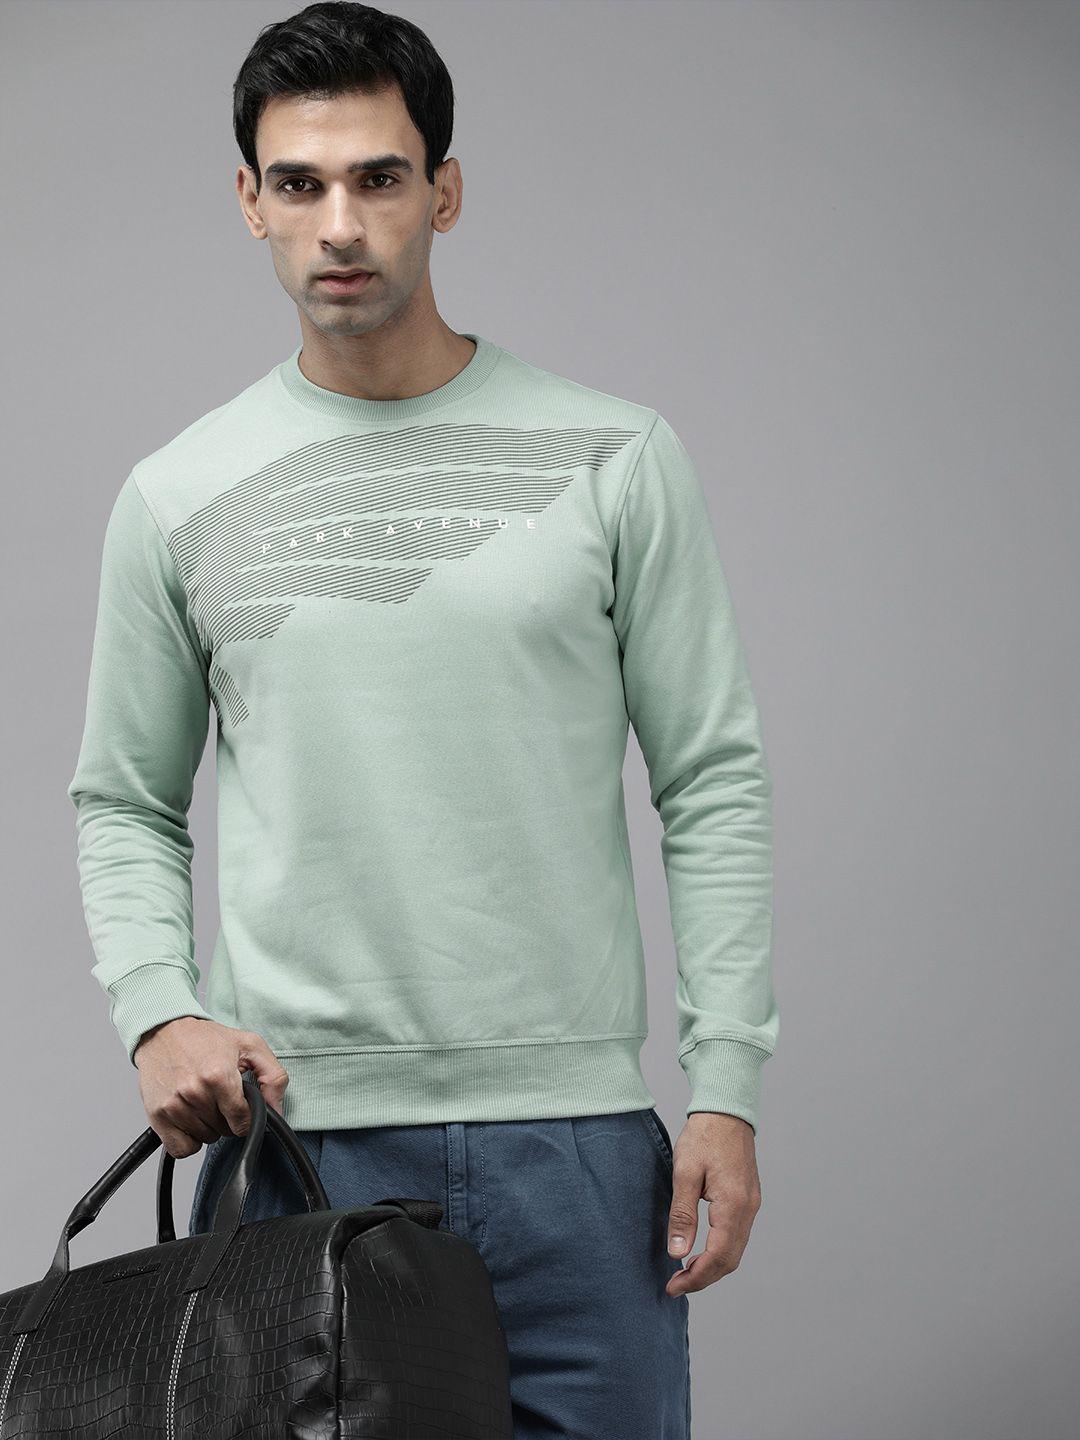 park avenue long sleeves geometric printed sweatshirt